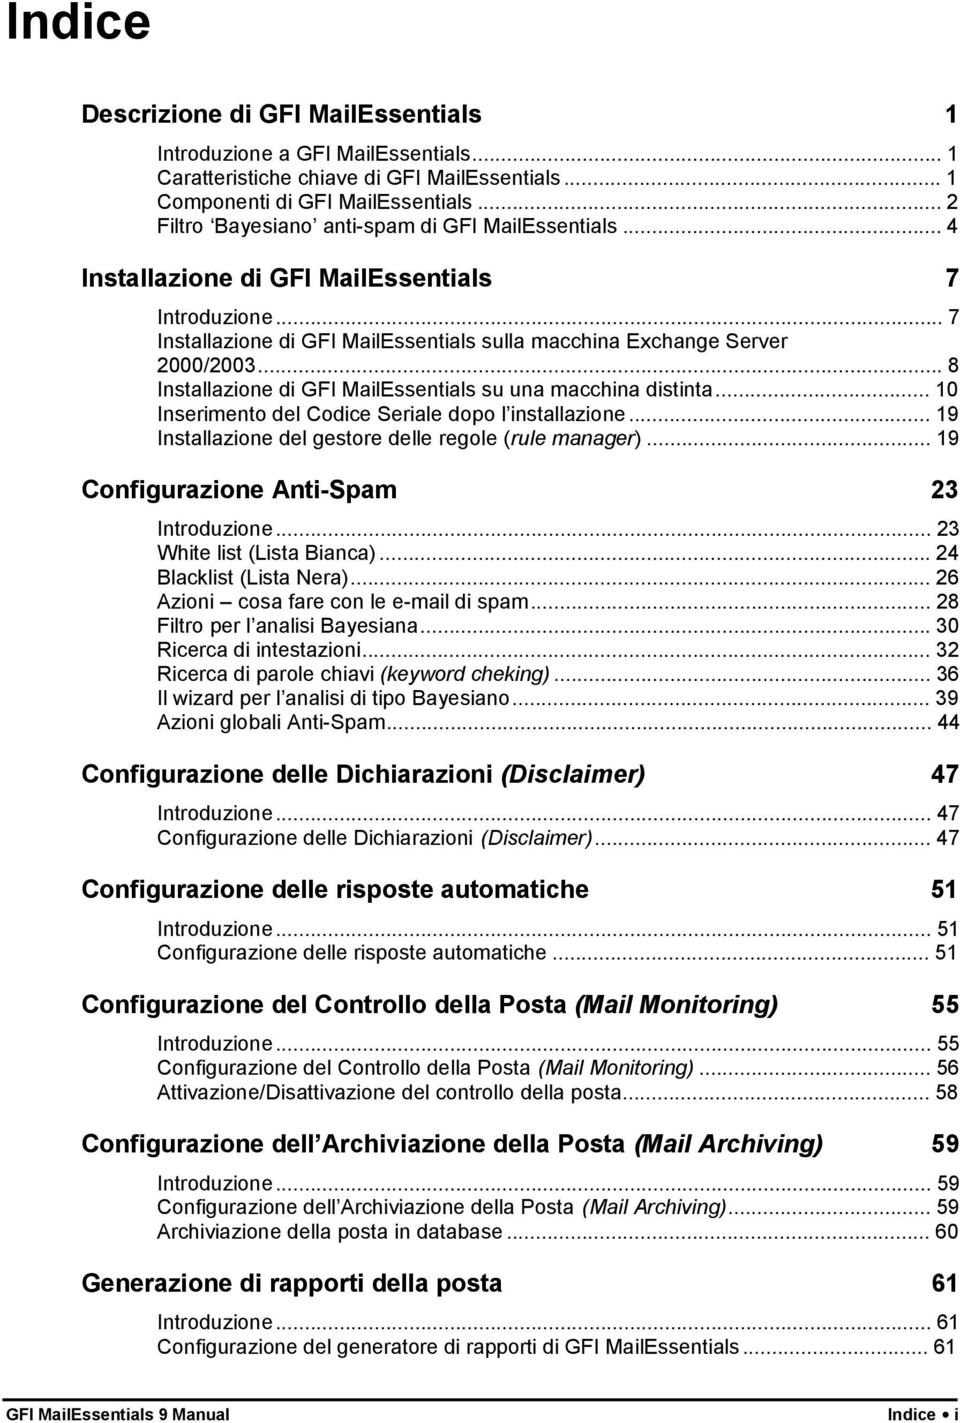 ..8 Installazione di GFI MailEssentials su una macchina distinta... 10 Inserimento del Codice Seriale dopo l installazione... 19 Installazione del gestore delle regole (rule manager).